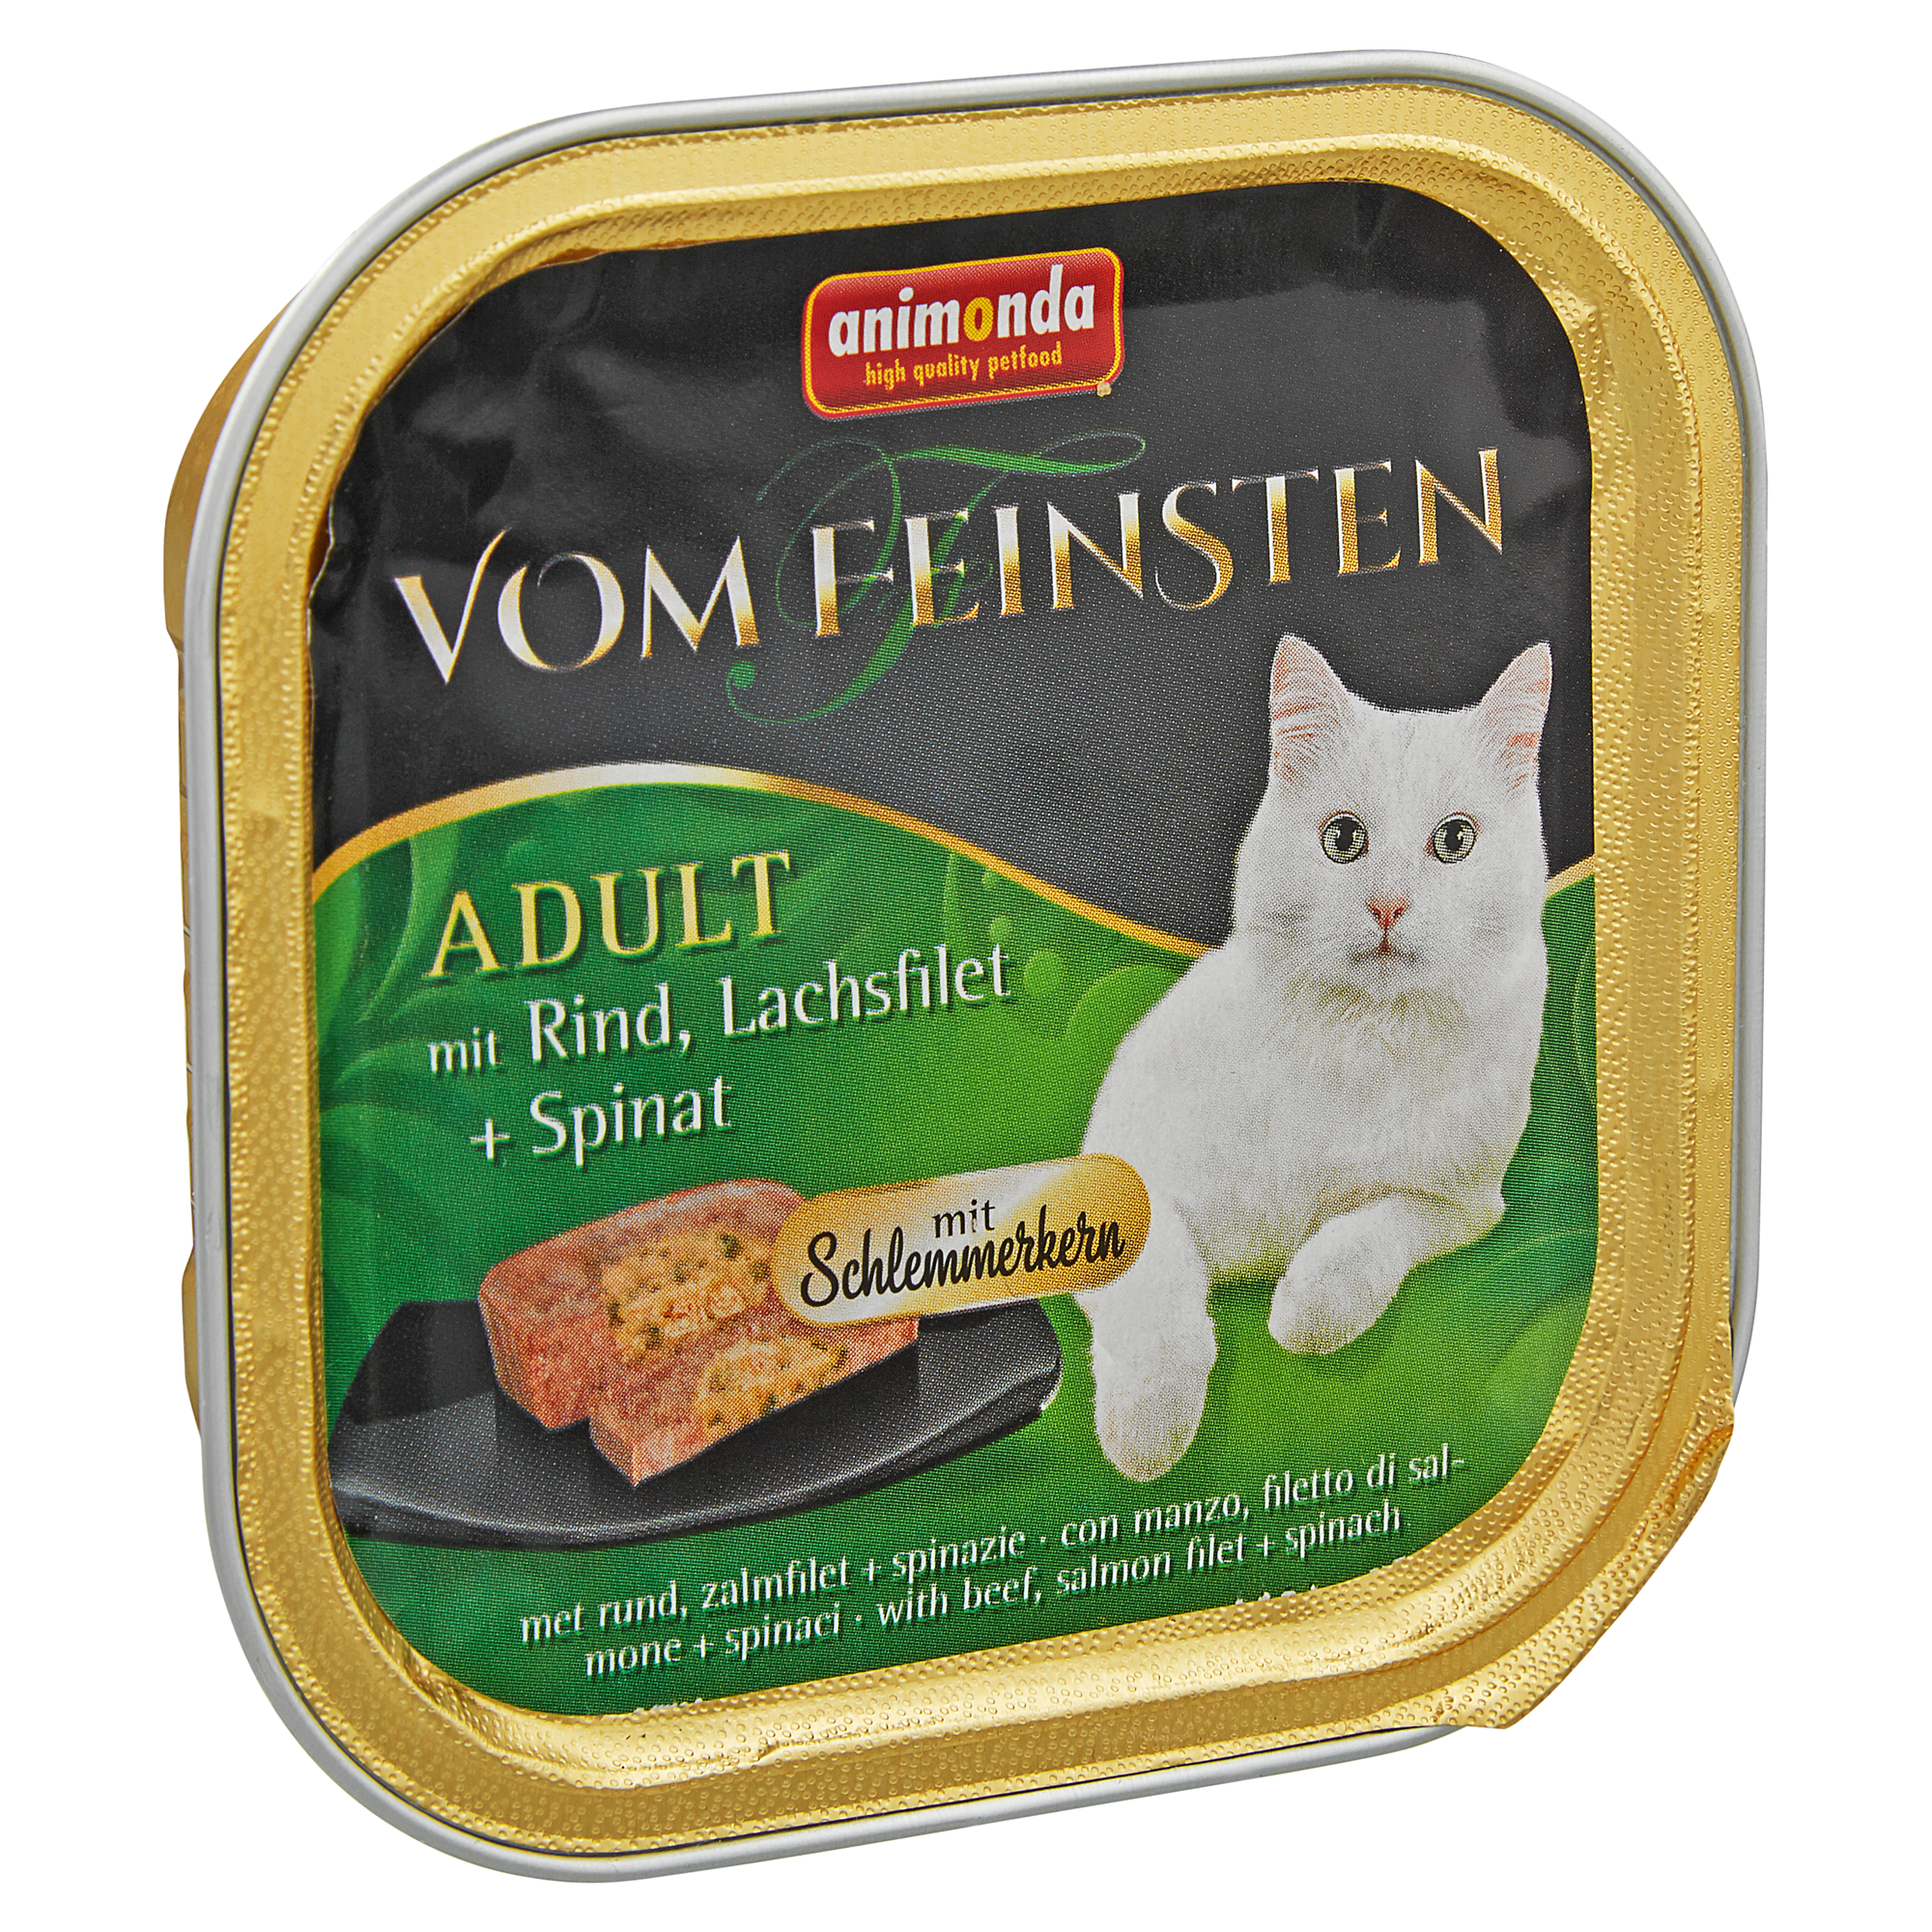 Katzennassfutter "Vom Feinsten" Adult mit Rind/Lachsfilet/Spinat 100 g + product picture